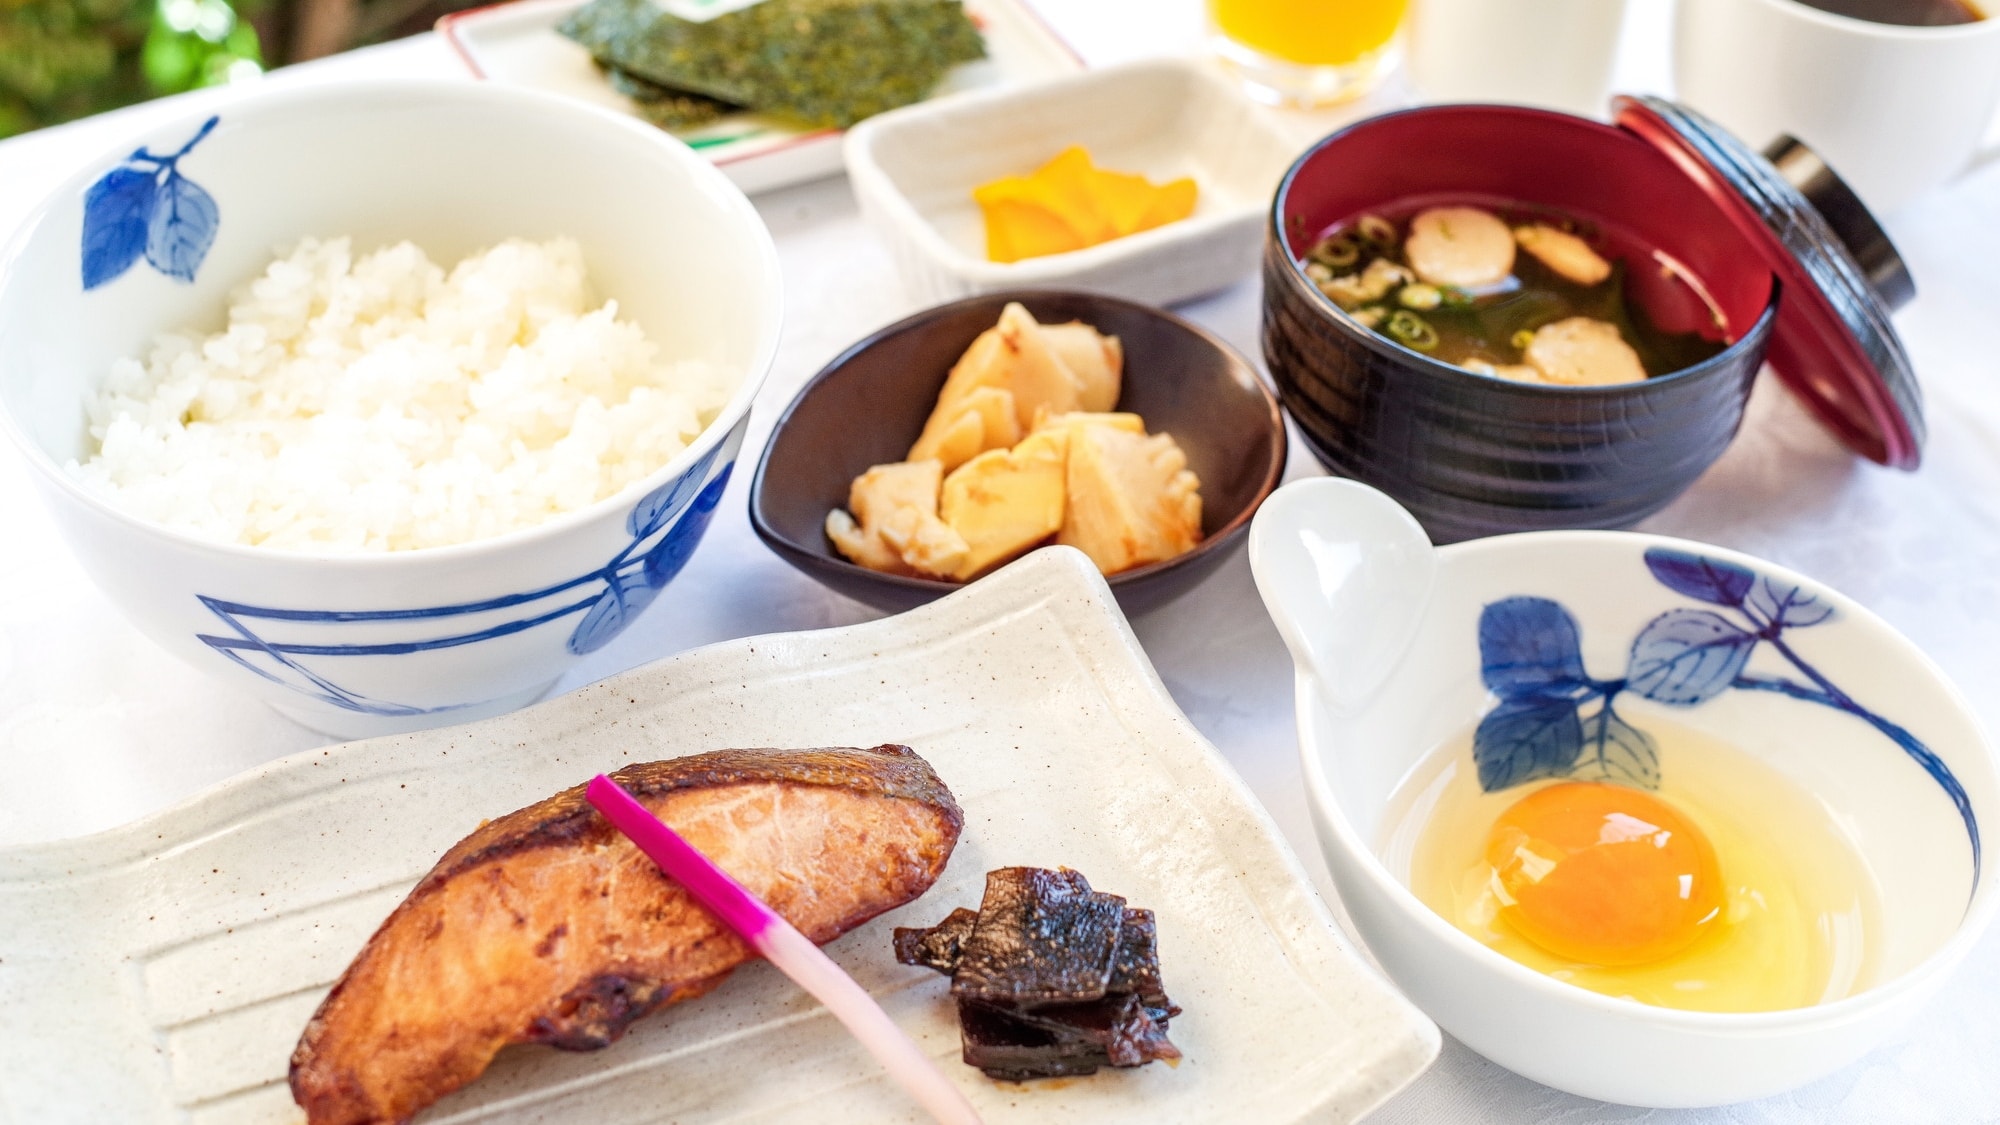 [Sarapan] Telur di atas nasi Telur adalah "telur Jepang" yang lahir sebagai telur mentah terbaik.